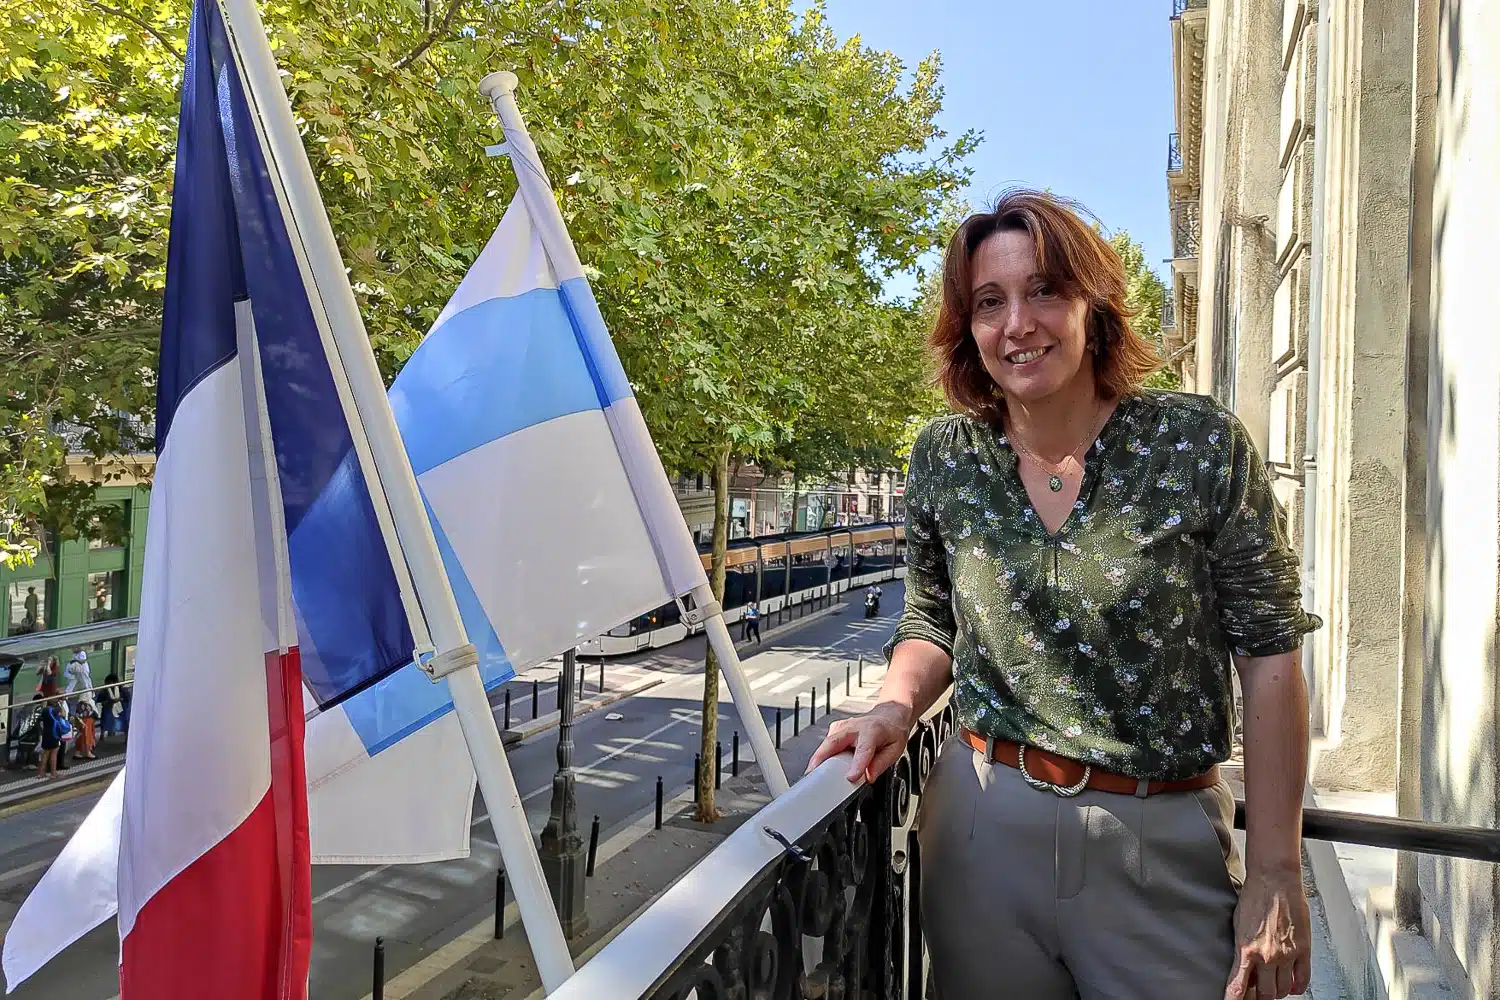 vente à la sauvette, Sophie Camard porte plainte avec 15 riverains contre la vente à la sauvette à Noailles, Made in Marseille